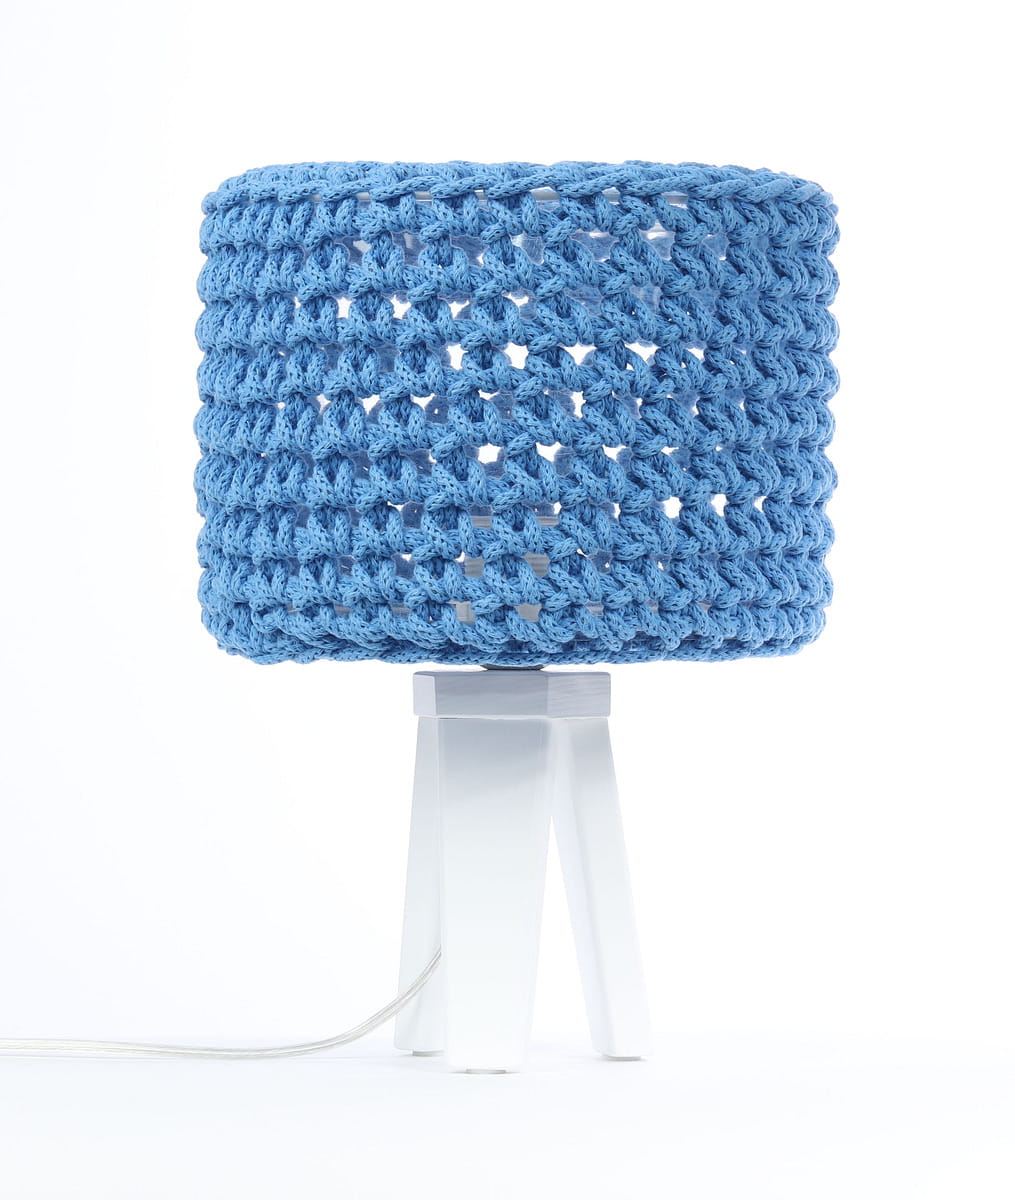 Niebieska mała lampka do pokoju dziecka z abażurem plecionym ze sznurka-lampka w sweterku na białej drewnianej podstawie- trójnóg.